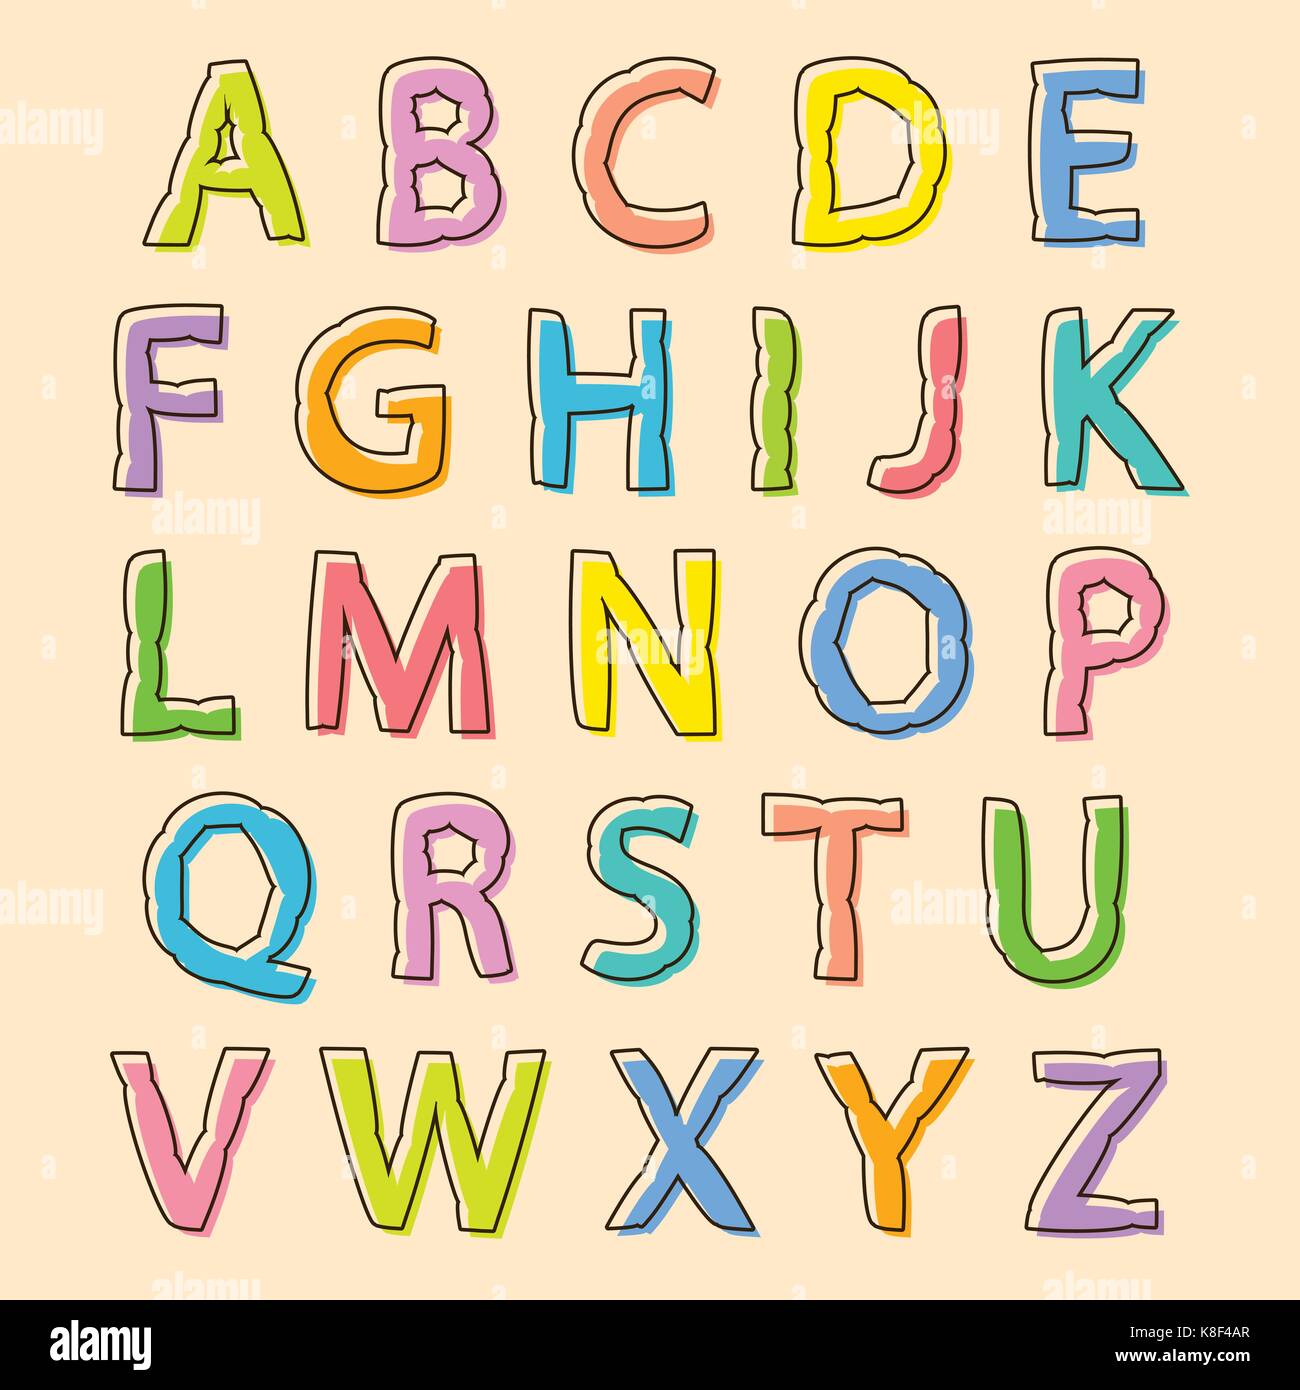 Bambino colorato Alphabet, Vector Illustration Illustrazione Vettoriale